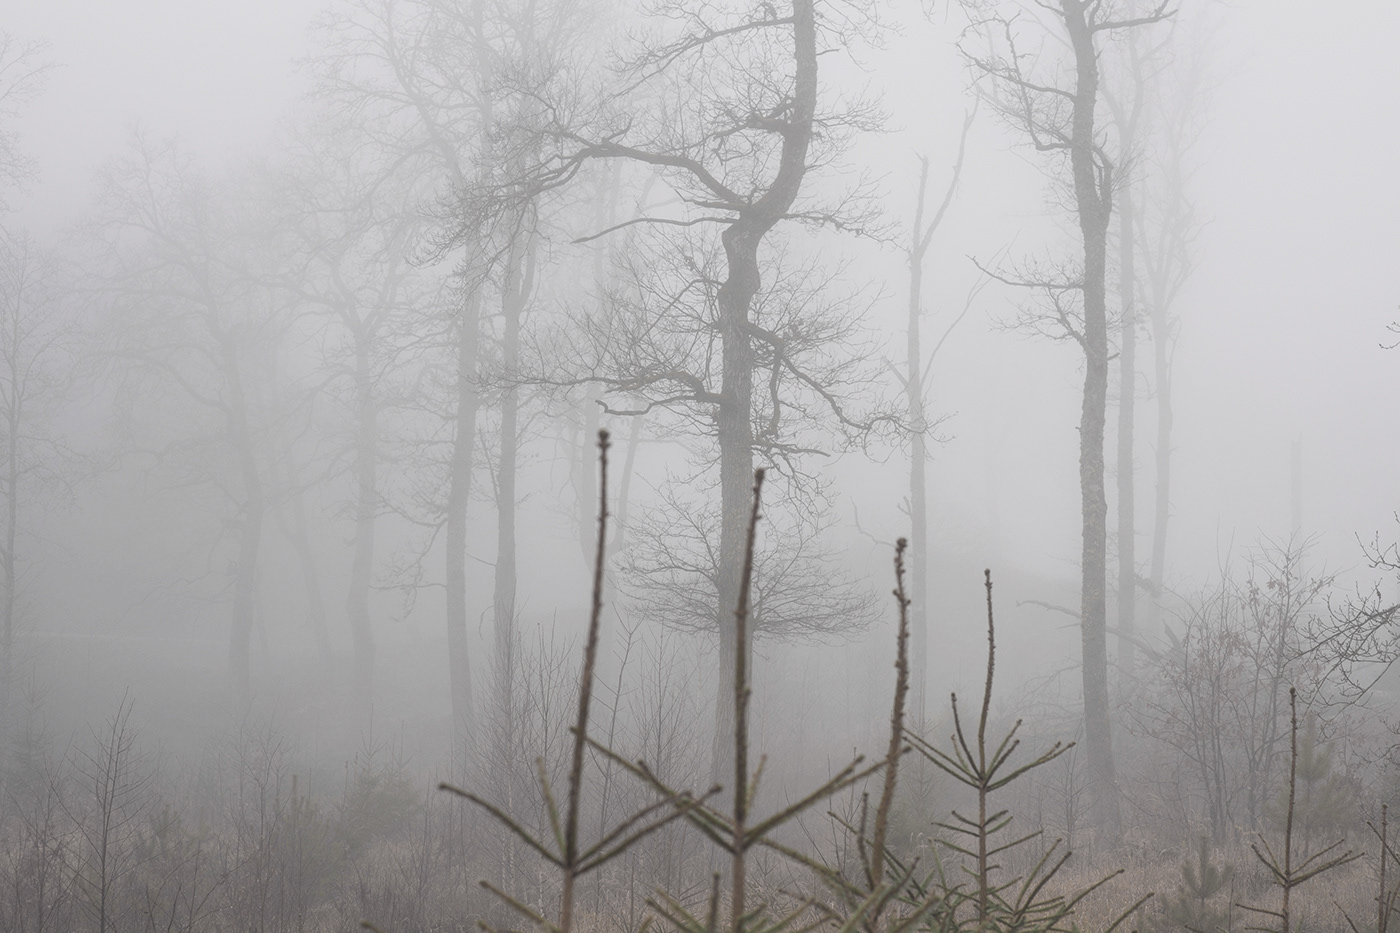 lietuva lithuania Landscape mist trees autumn Mindaugas Buivydas Fog landscape tree art fog